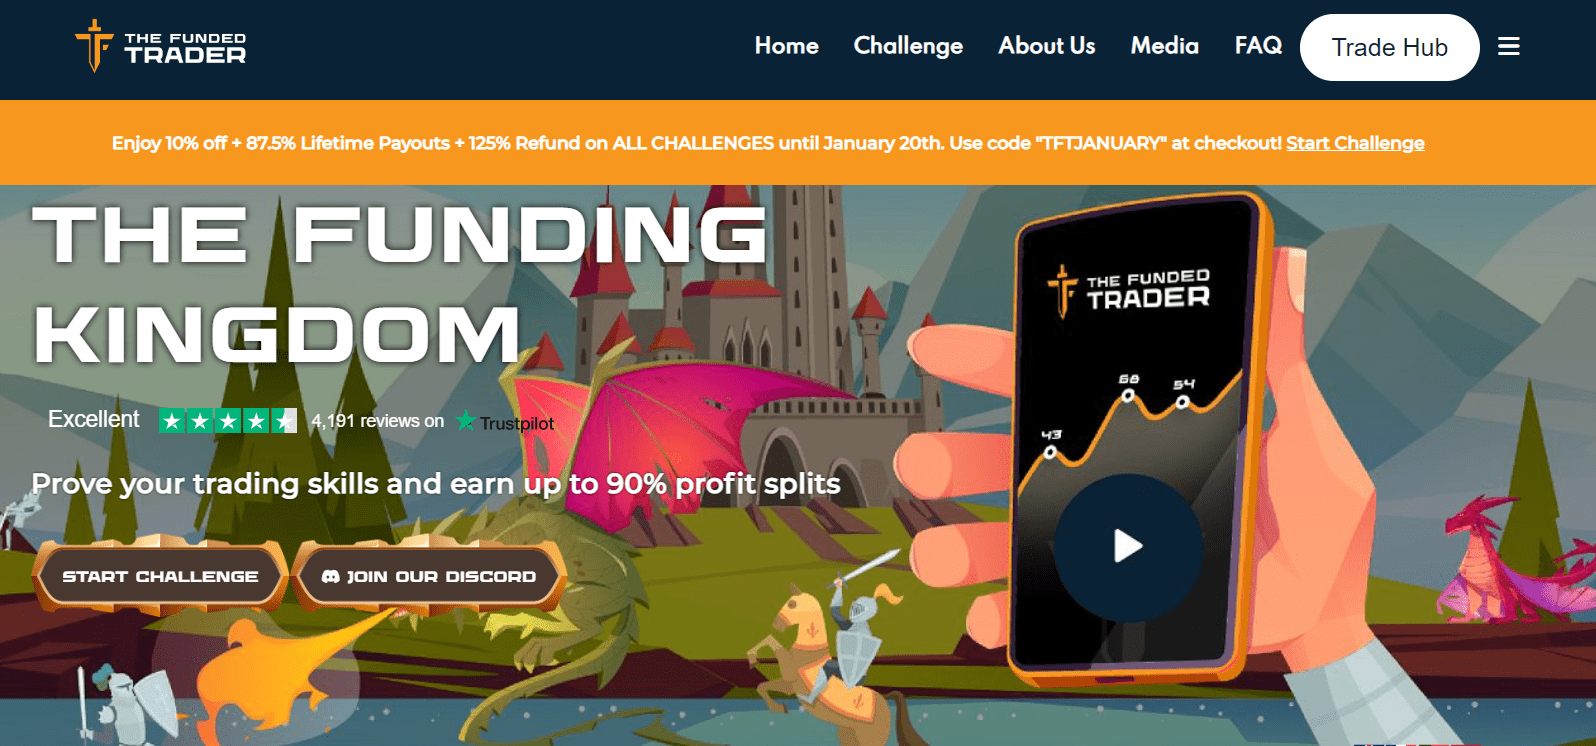 Gjennomgå The Funded Trader - Start Challenge